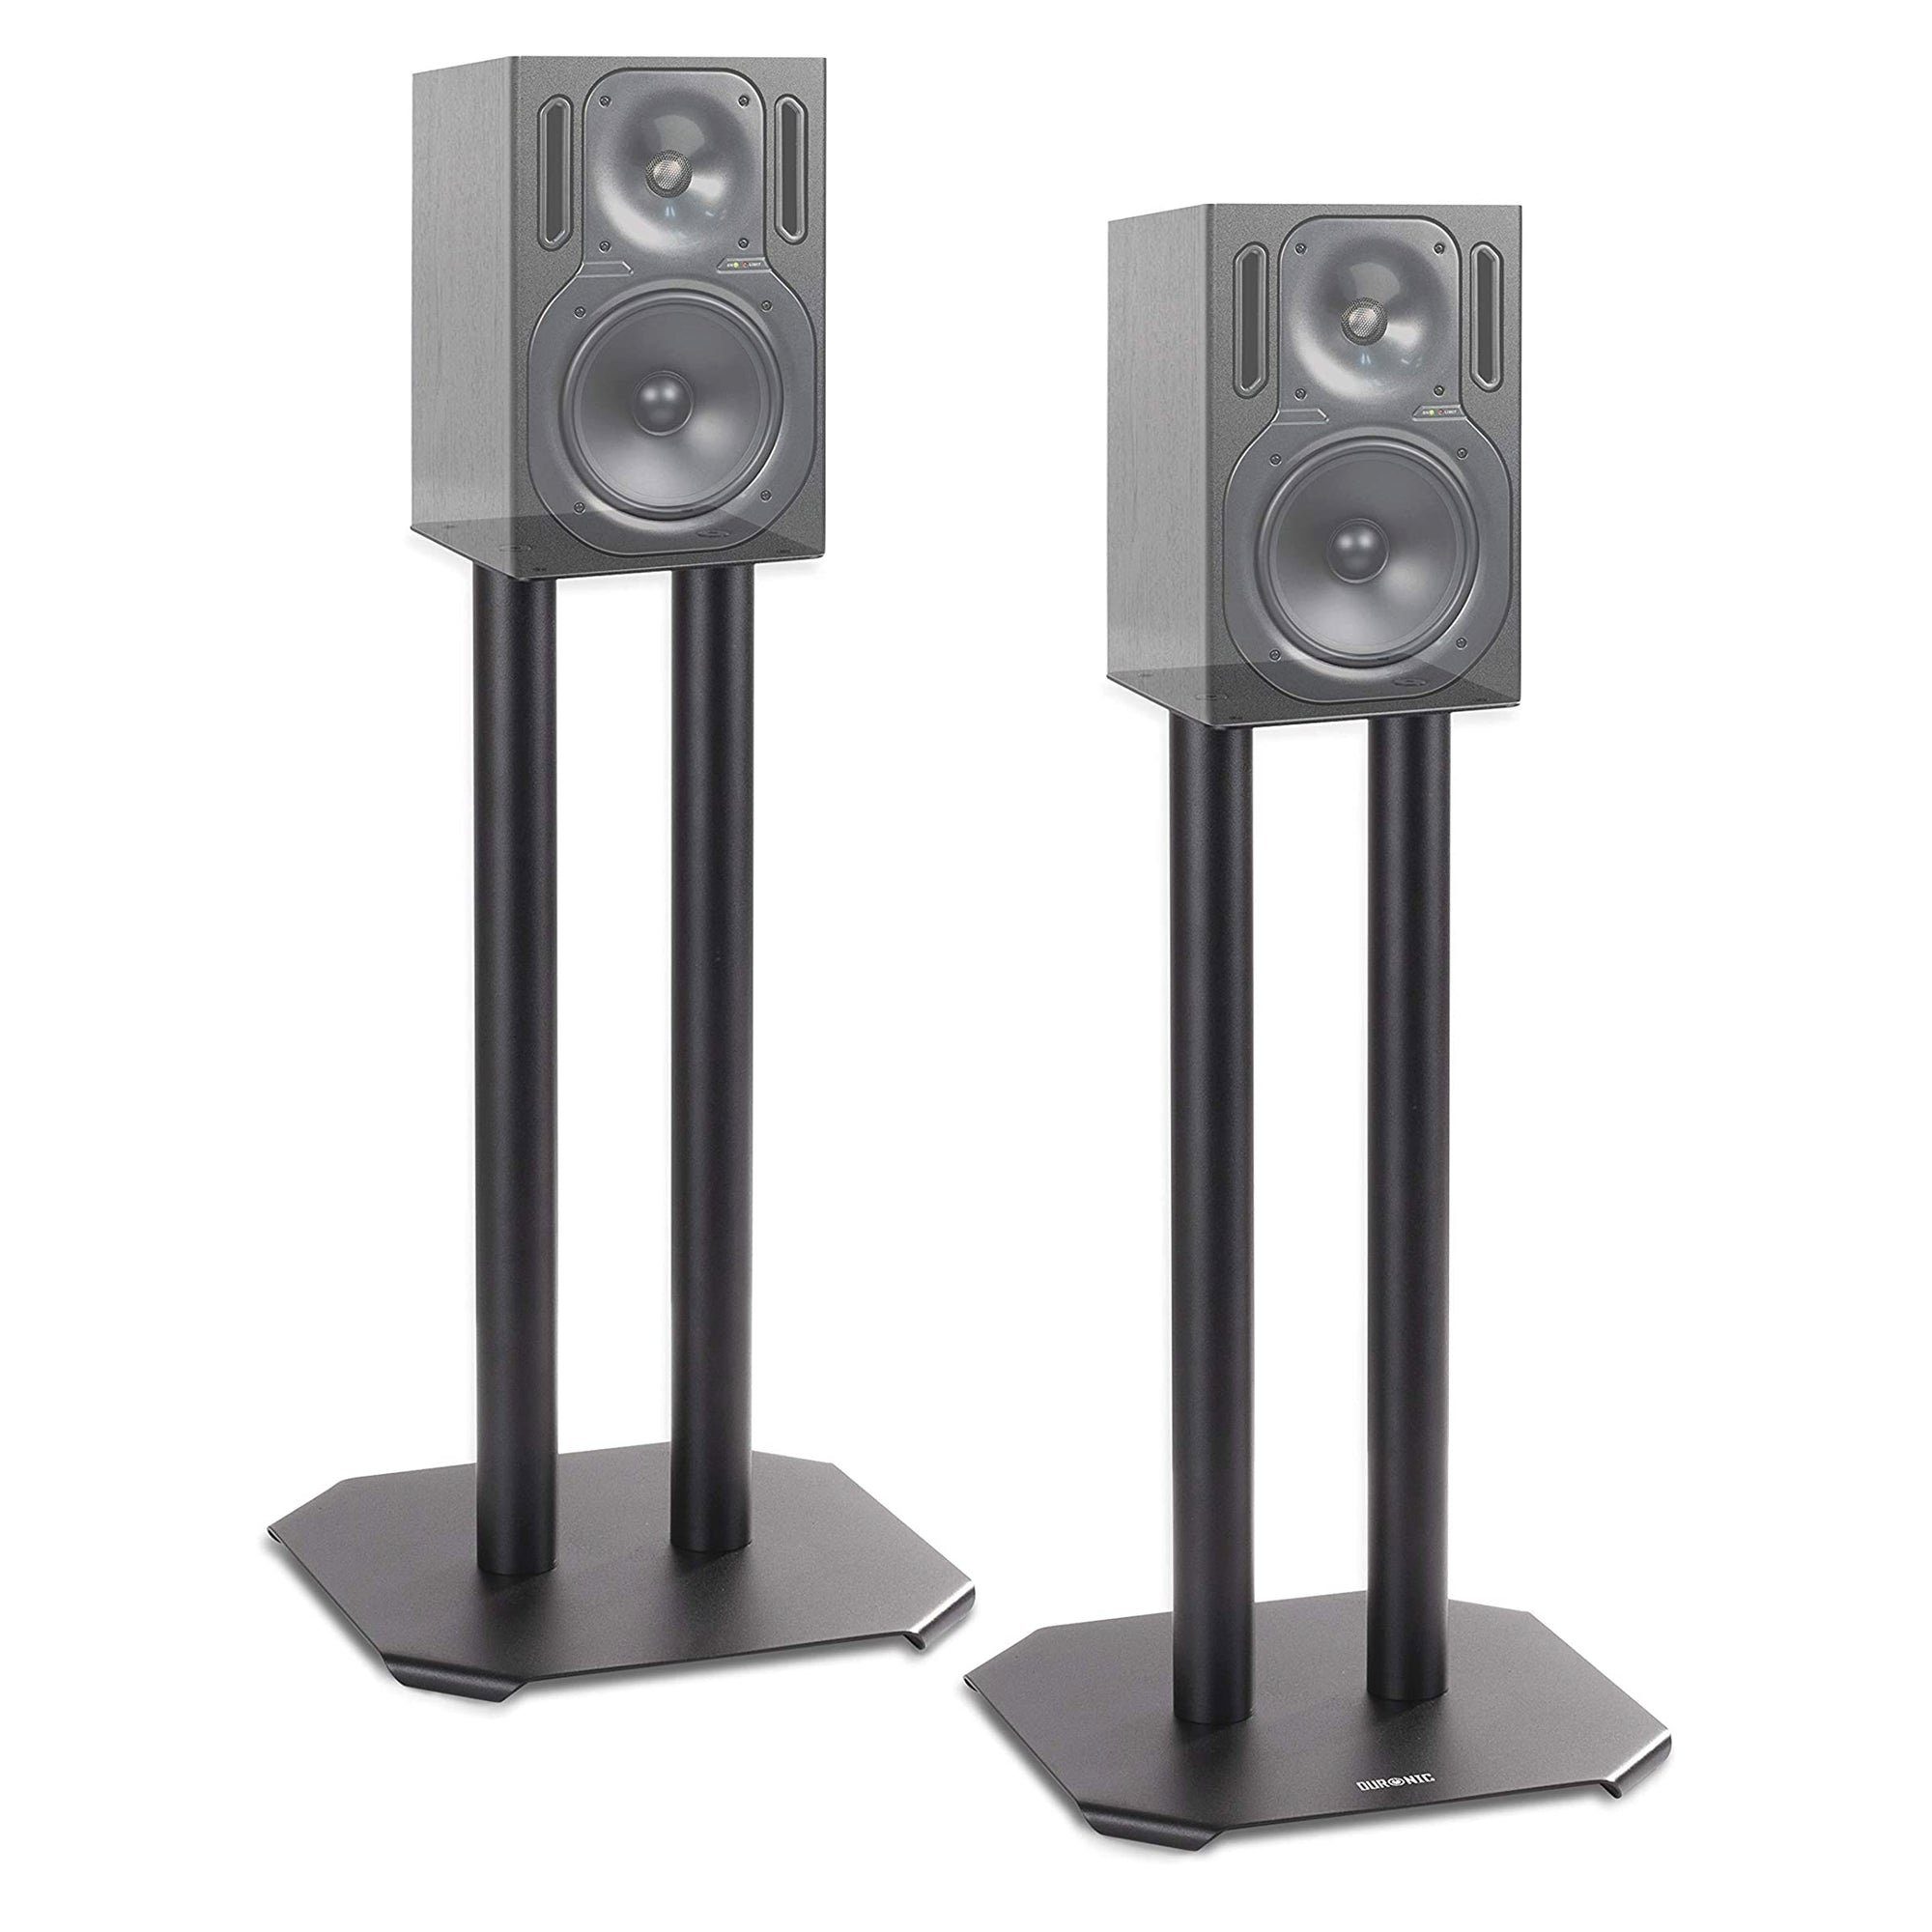 Duronic Lautsprecherständer, (SPS1022 40 Lautsprecherständer, 40 cm hoher  Ständer für Lautsprecher und Boxen bis 5 kg, 2er-Set Universal Boxenständer  aus Metall, HiFi Monitor Stative, Heimkino Surround Sound)